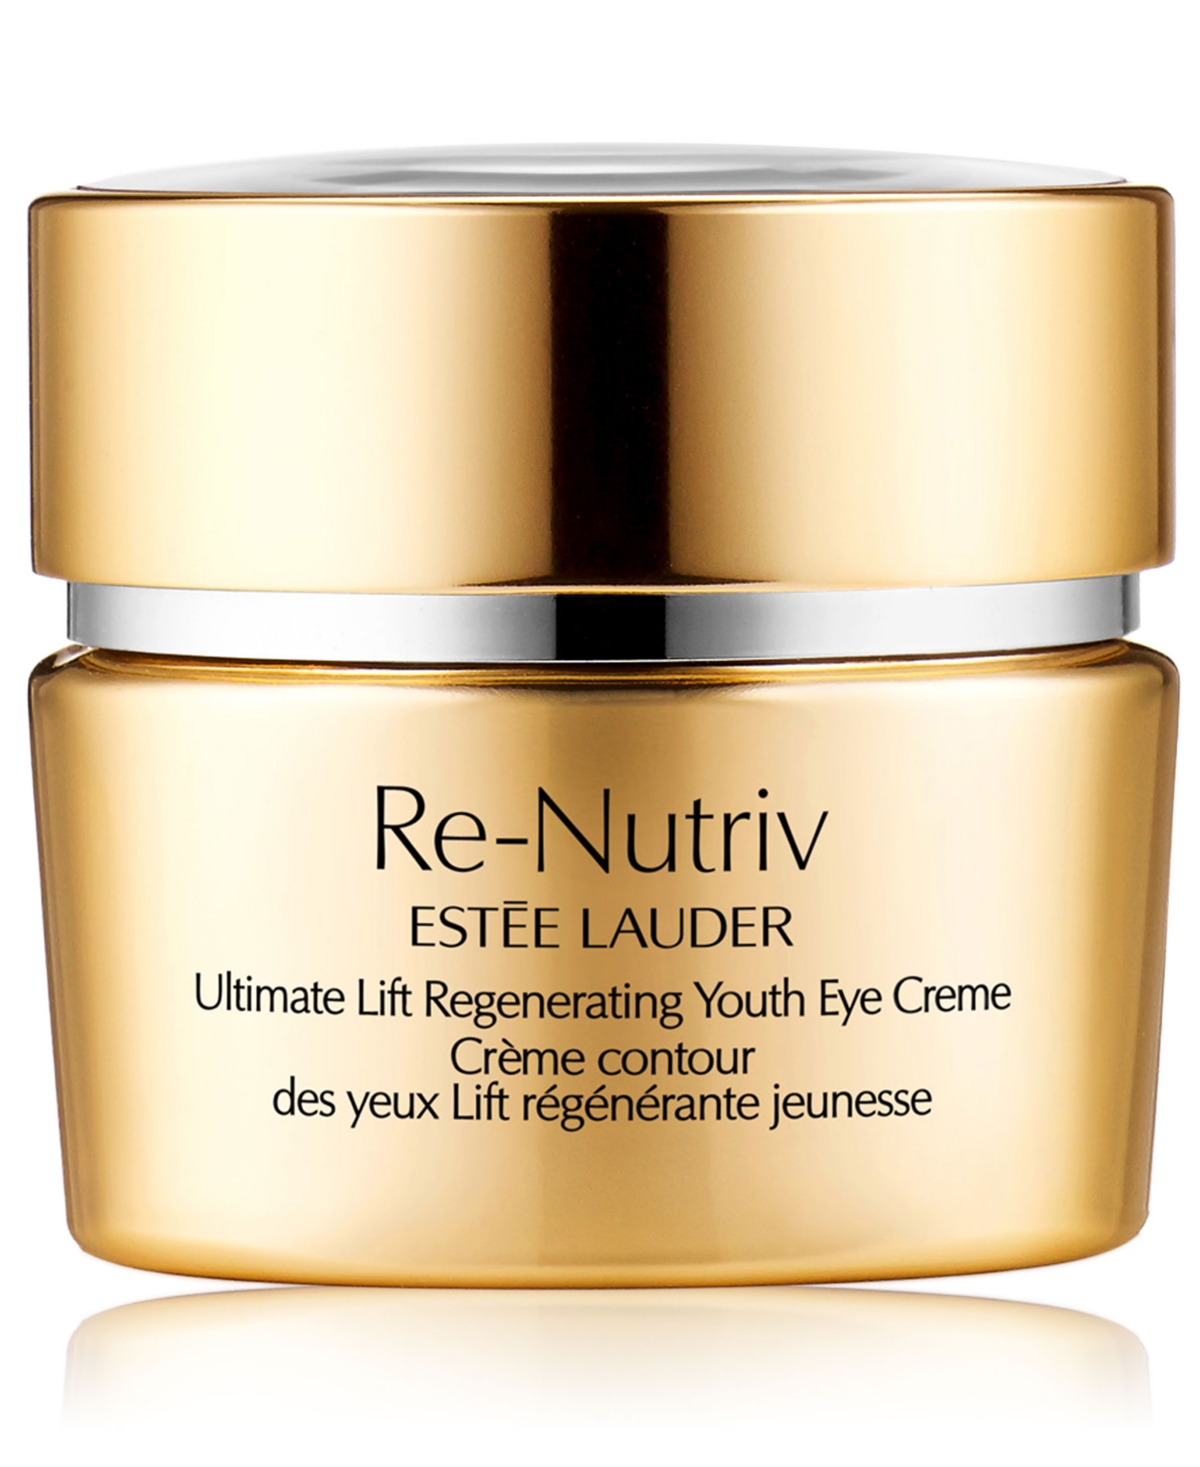 Estée Lauder Re-nutriv Ultimate Lift Regenerating Youth Eye Creme, 0.5-oz. In No Color